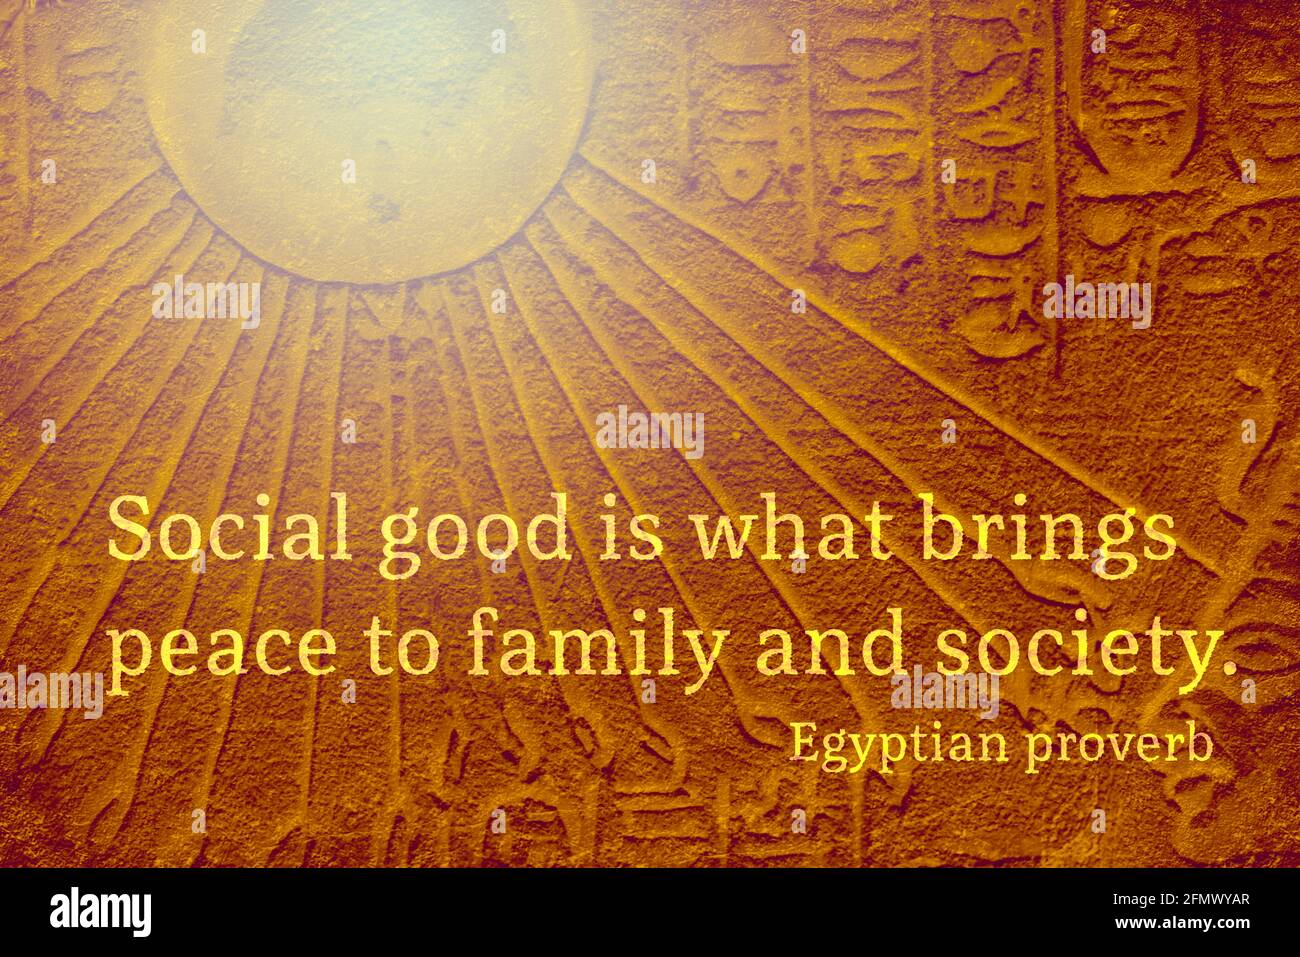 Le bien social est ce qui apporte la paix à la famille et à la société - ancienne citation de proverbe égyptien Banque D'Images